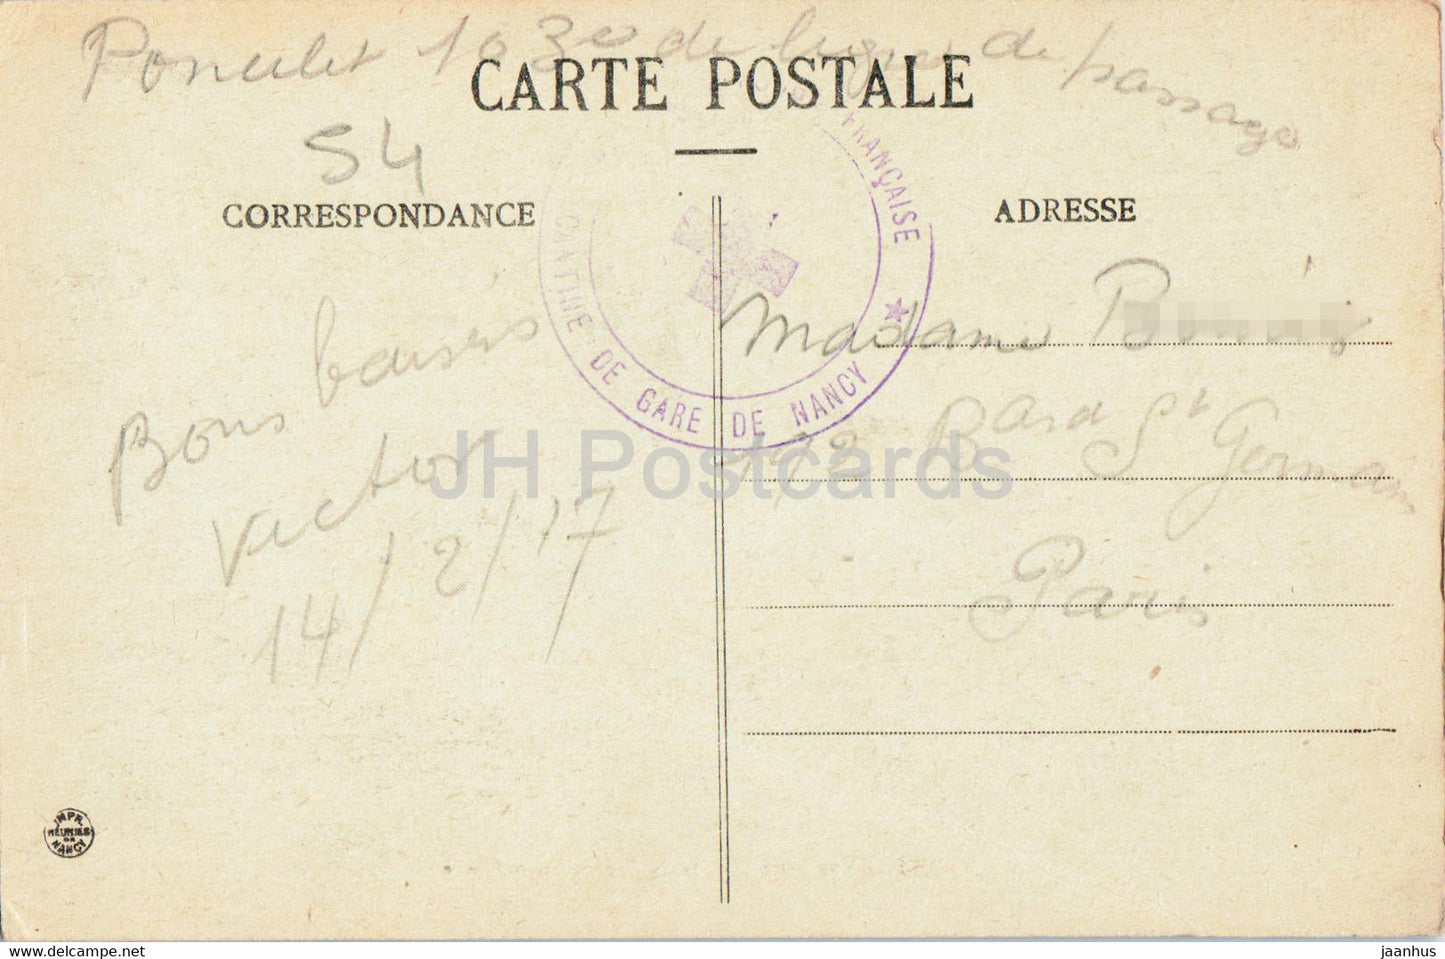 Nancy - Vue Generale prise depuis Saint Epvre - 25 - alte Postkarte - 1917 - Frankreich - gebraucht